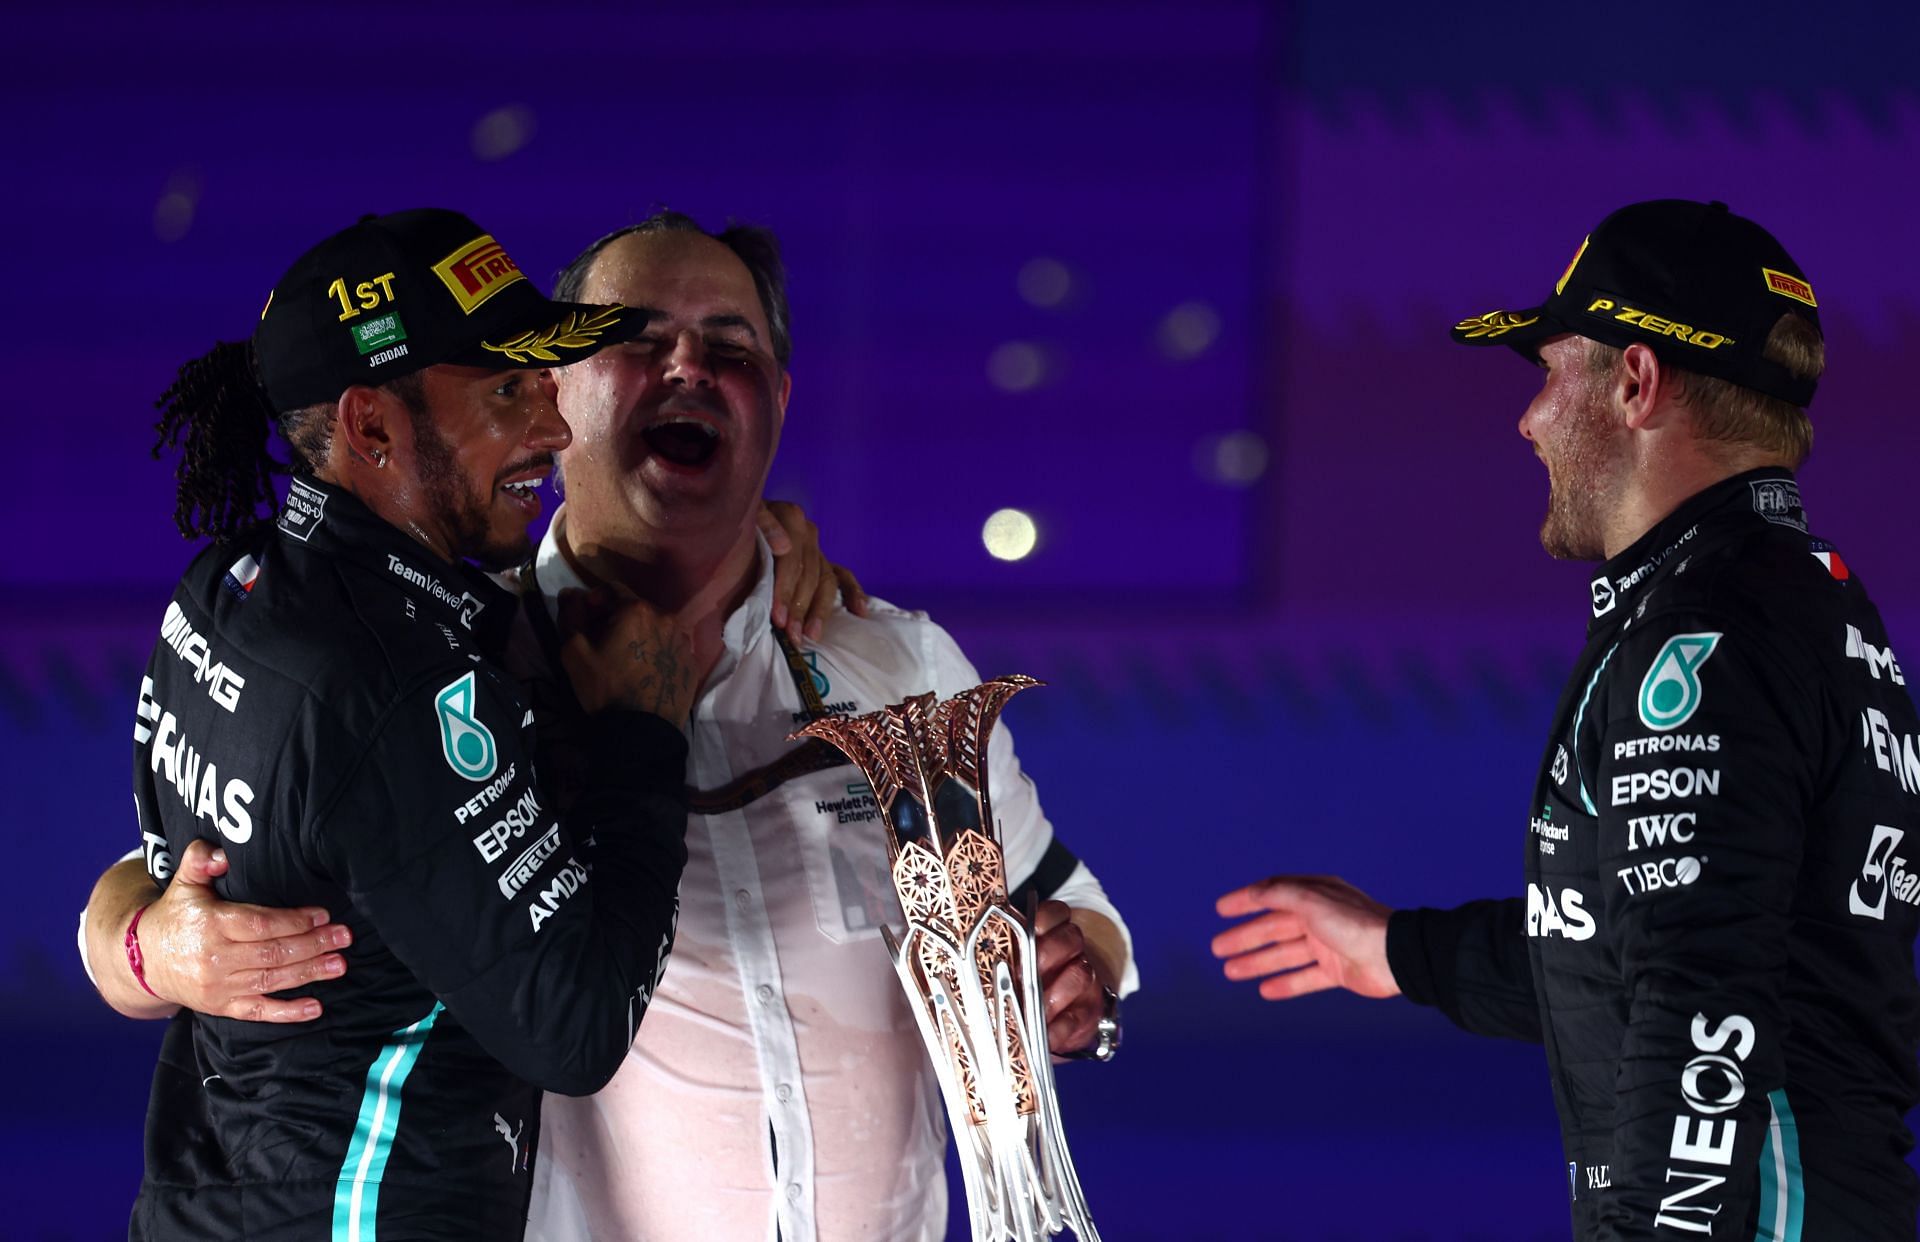 F1 Grand Prix of Saudi Arabia - Lewis Hamilton celebrates with Ron Meadows and Valtteri Bottas on the podium.